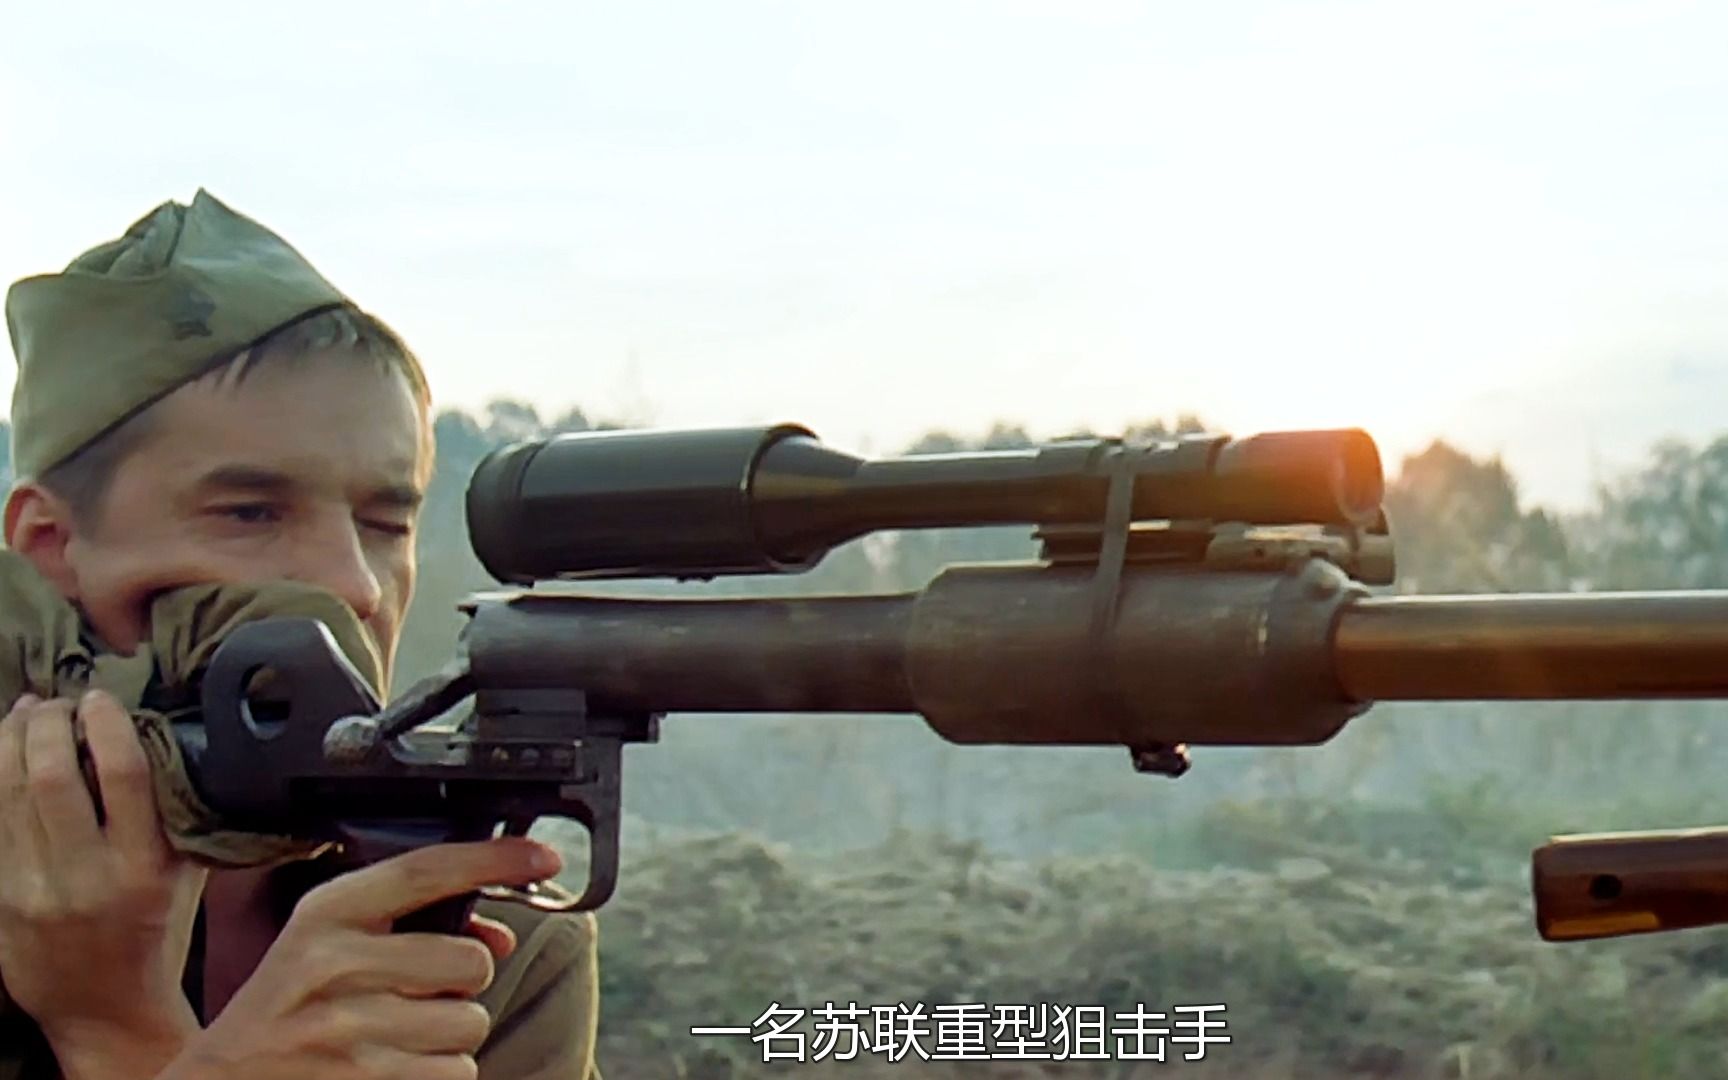 二战电影《狩猎行动》:苏联狙击小组激战敌穴,战斗超燃